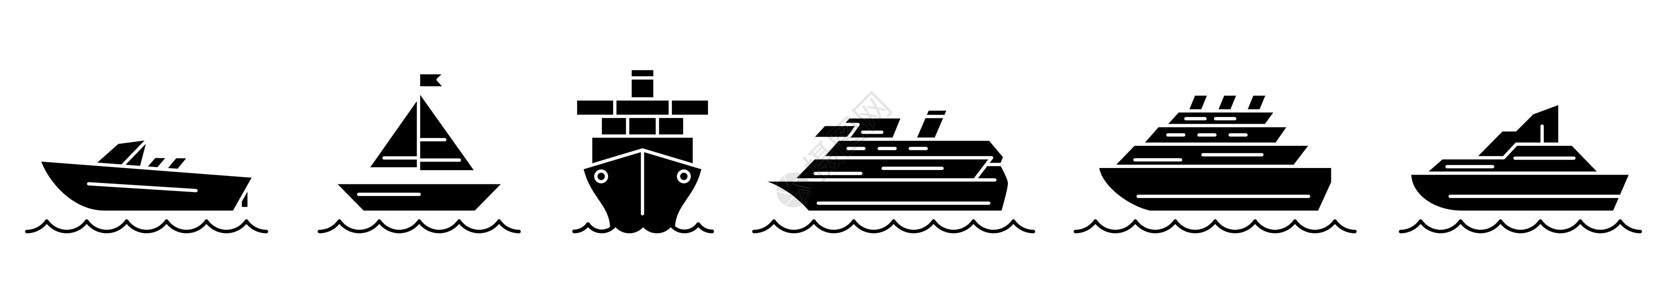 船舶图标 一组黑色船舶图标 矢量说明图片